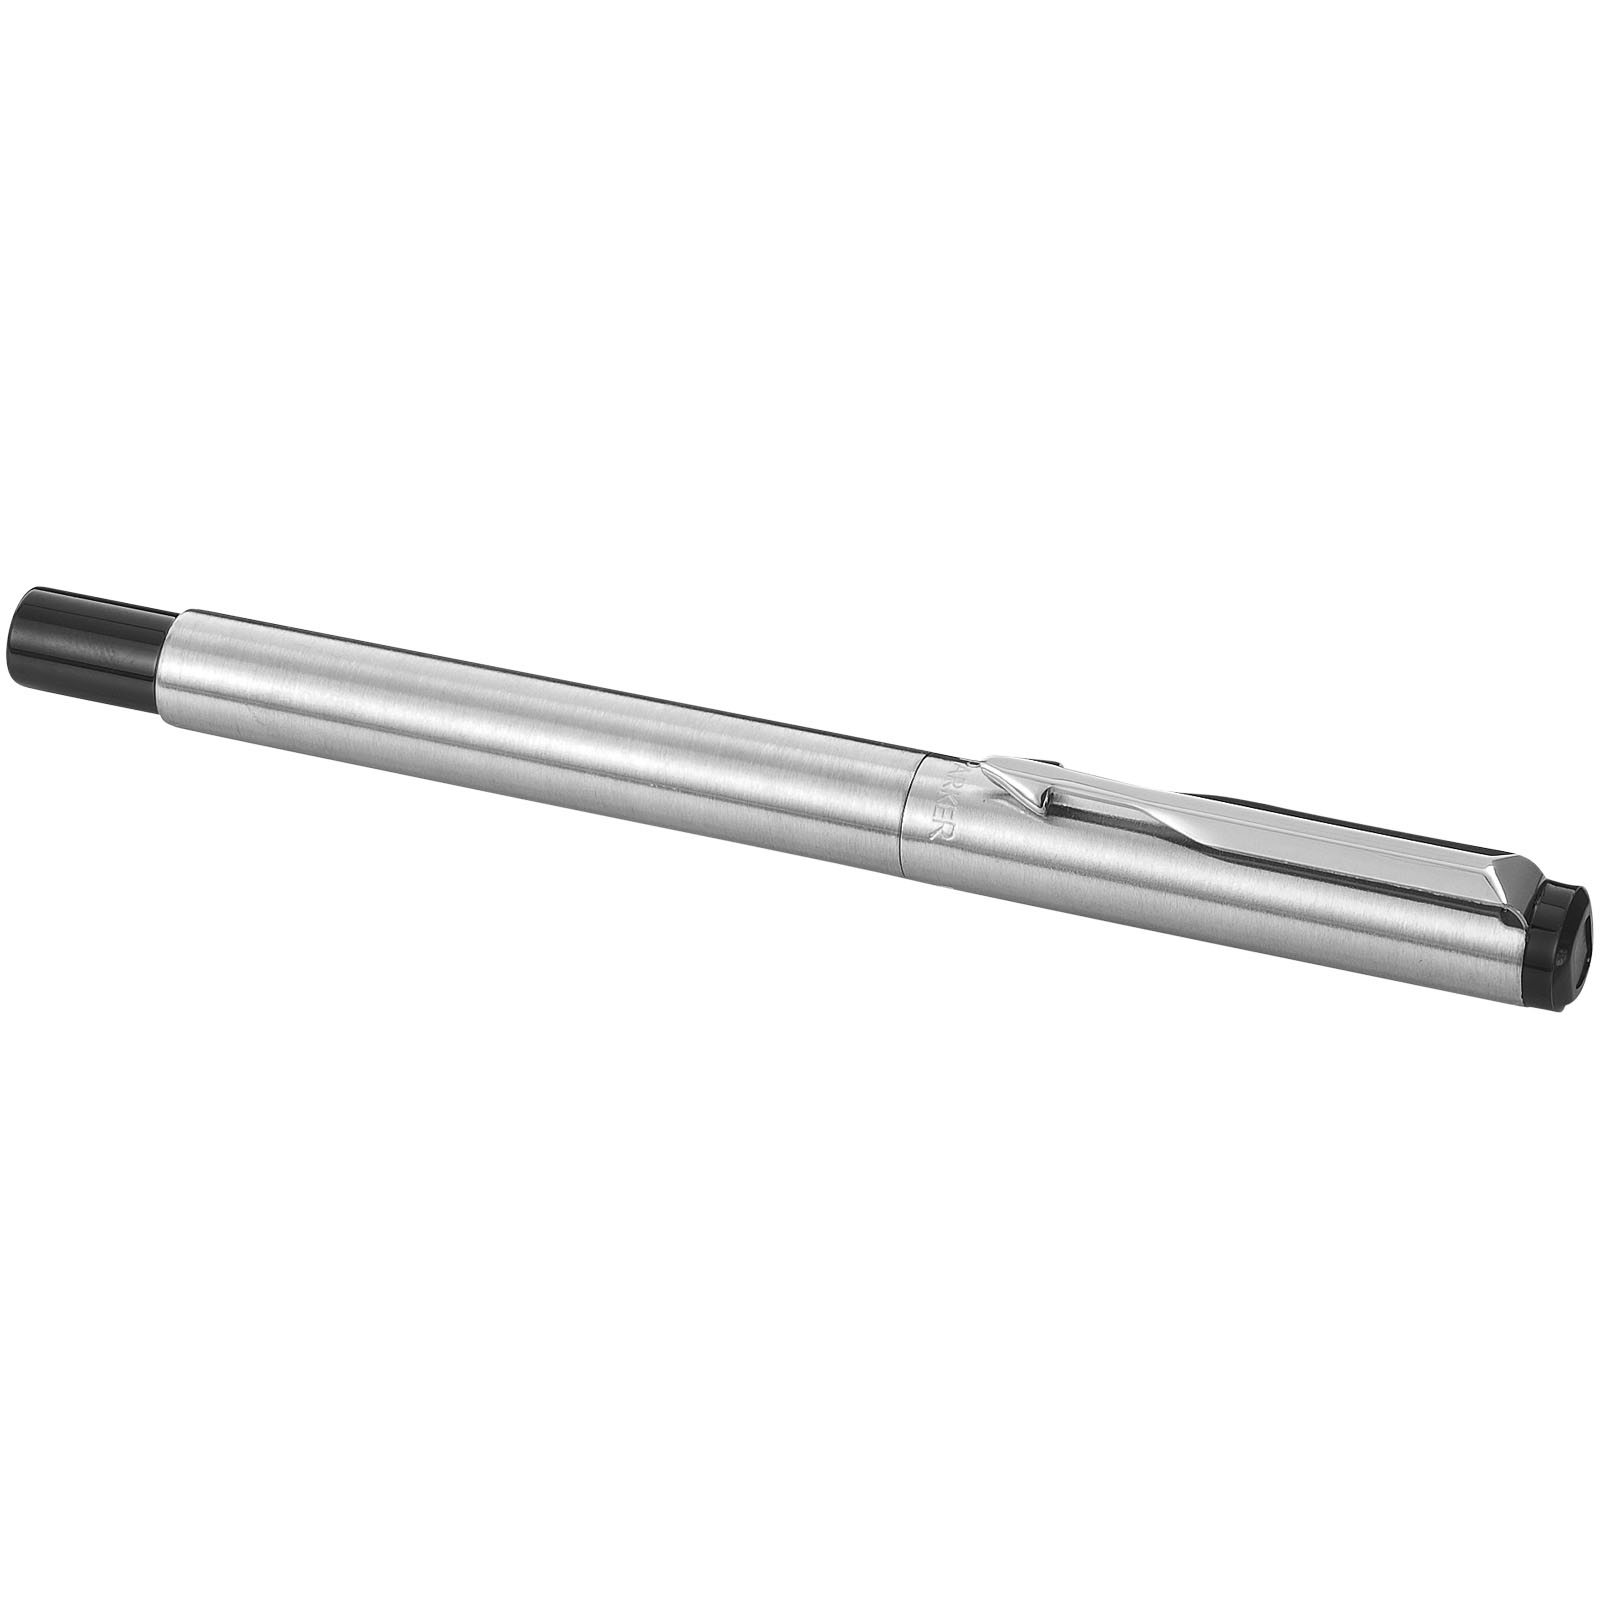 Advertising Rollerball Pens - Parker Vector rollerball pen - 4